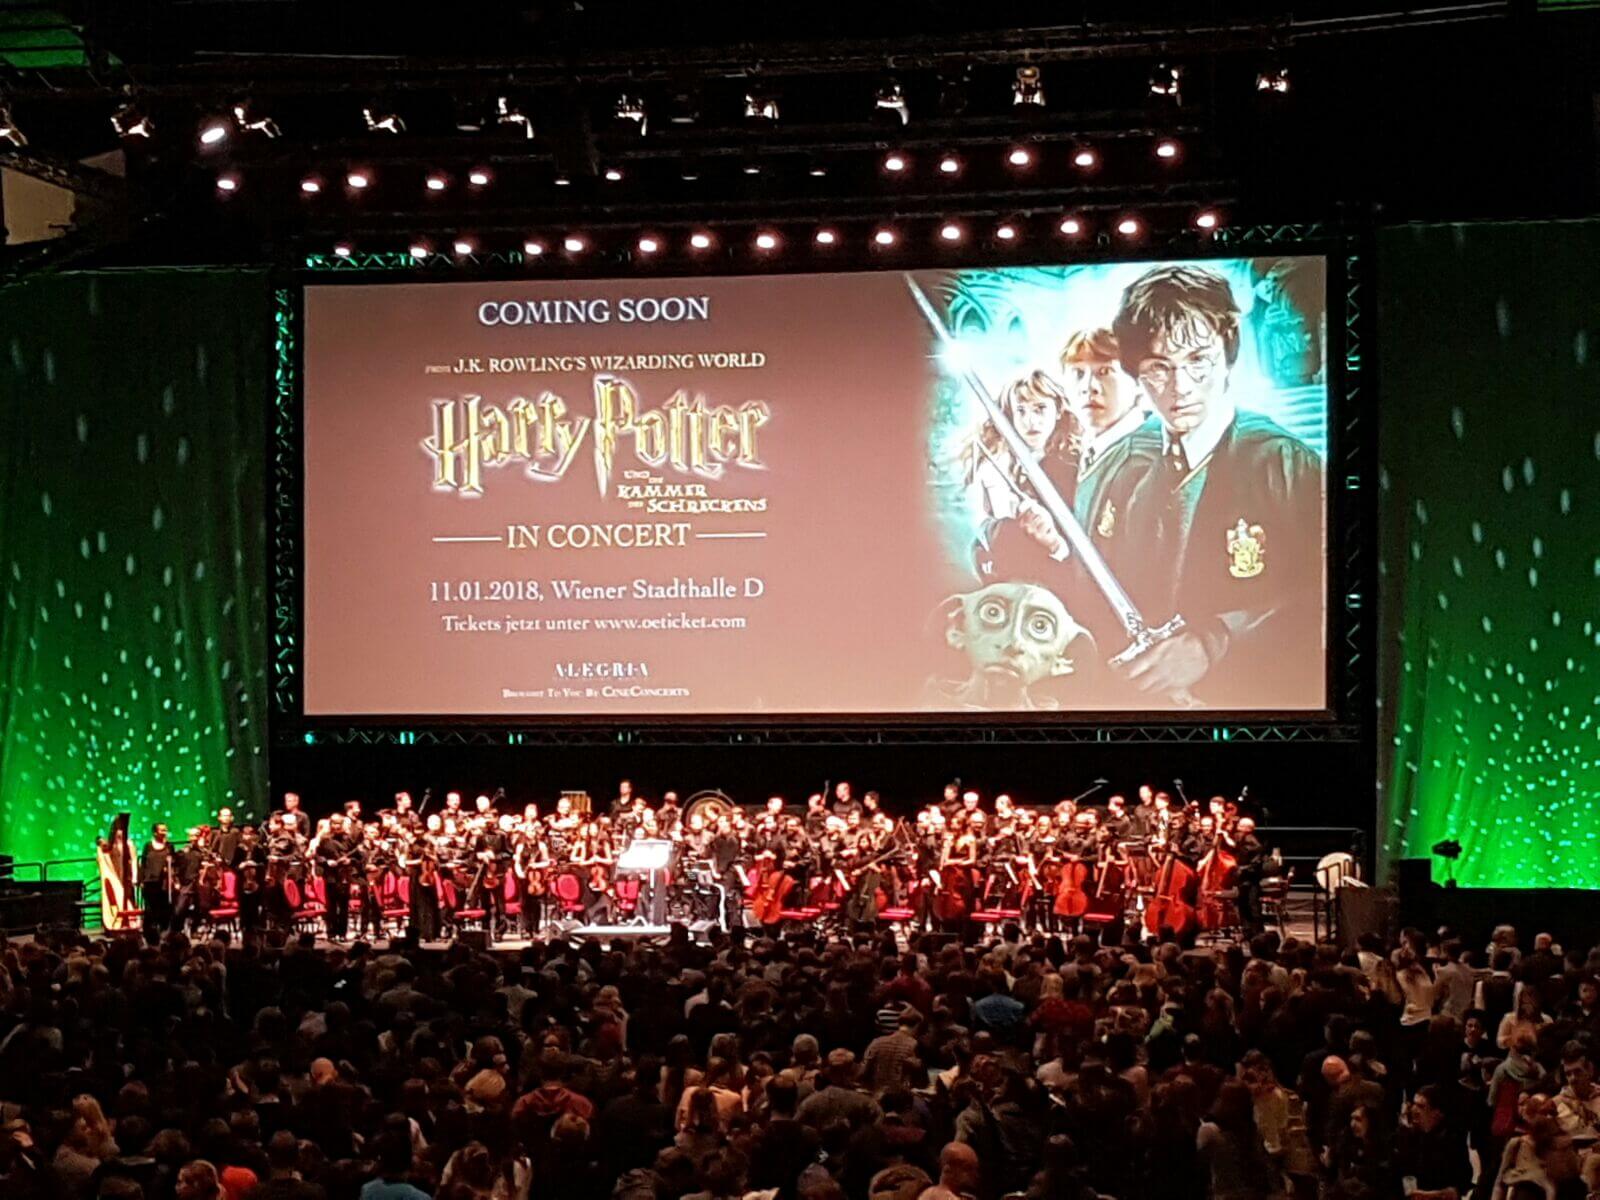 Harry Potter und die Kammer des Schreckens in Concert